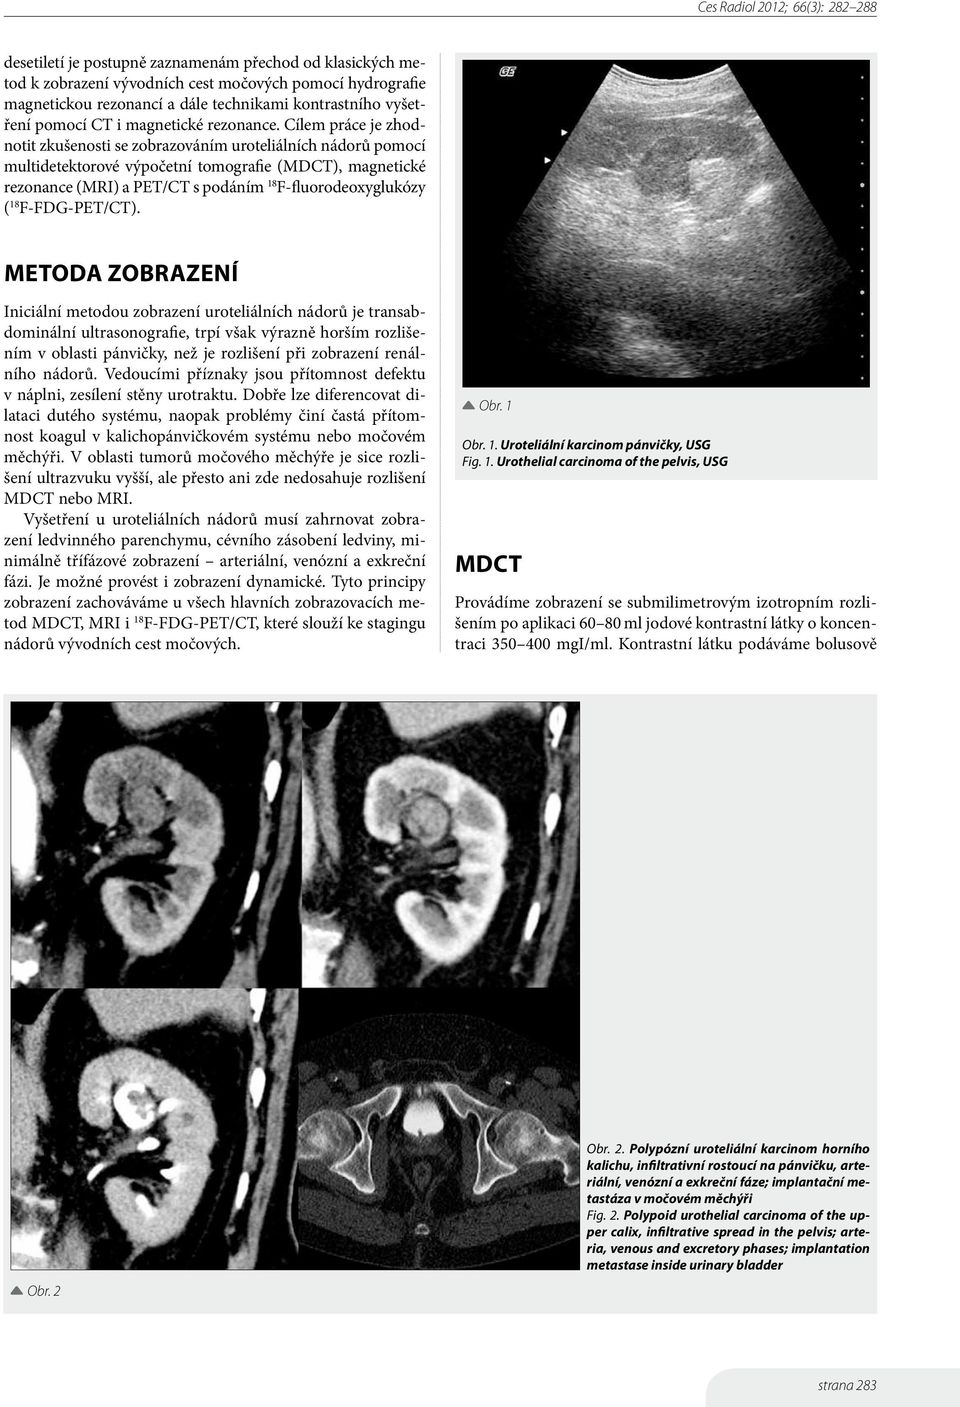 Cílem práce je zhodnotit zkušenosti se zobrazováním uroteliálních nádorů pomocí multidetektorové výpočetní tomografie (MDCT), magnetické rezonance (MRI) a PET/CT s podáním 18 F-fluorodeoxyglukózy (